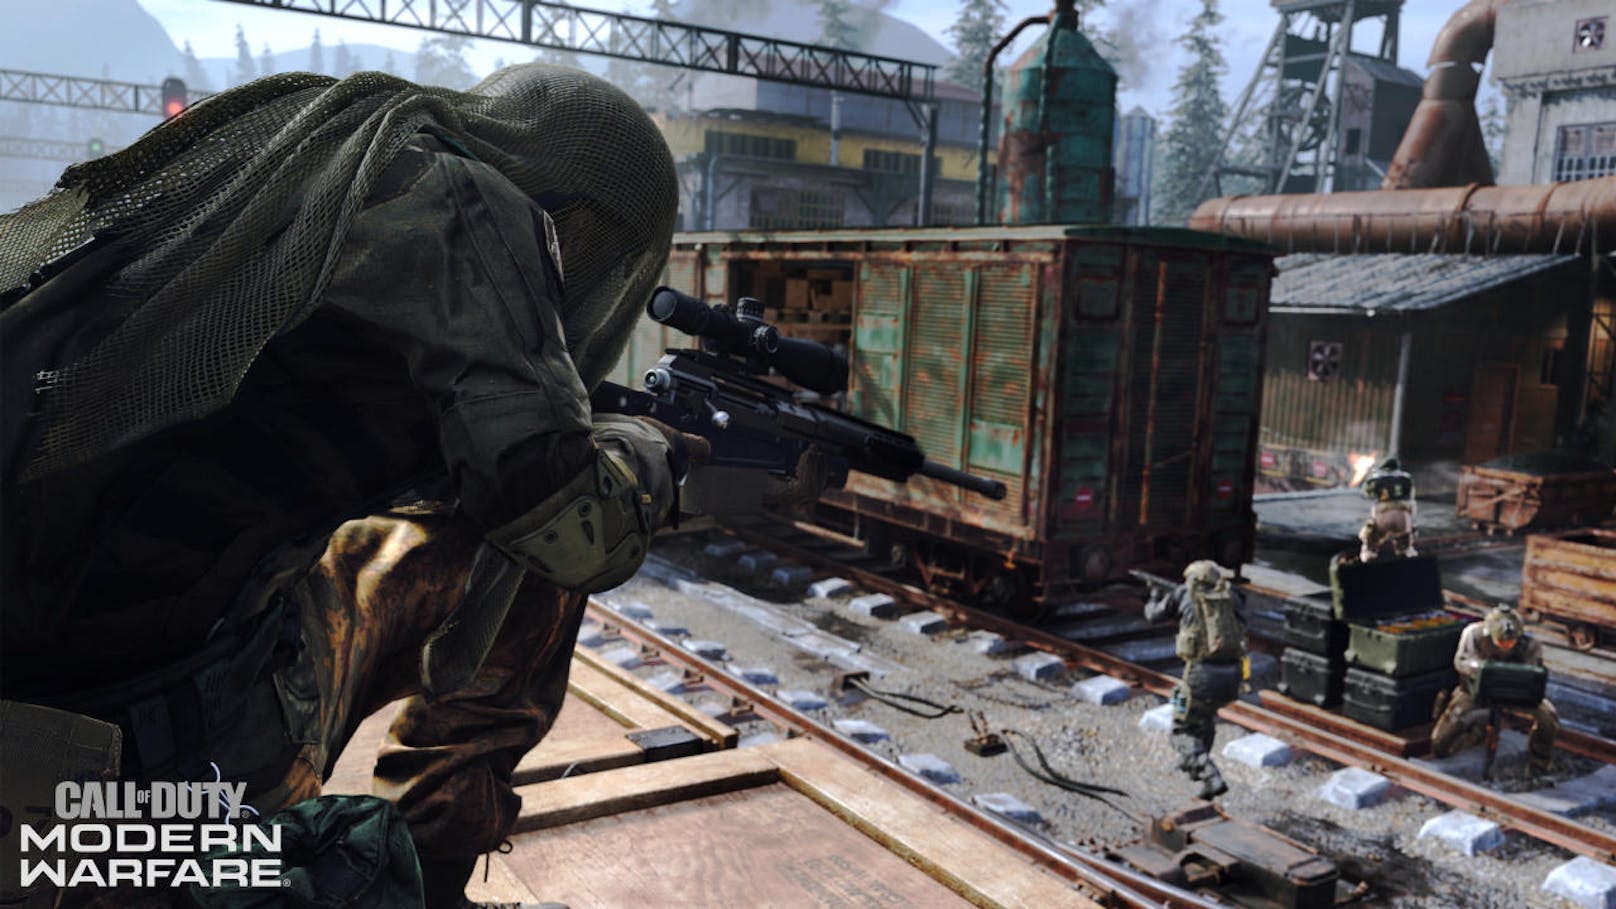 <b>12. September 2019:</b> Heute startet die Beta von "Call of Duty: Modern Warfare" auf PlayStation 4, sodass die Fans einen ersten Vorgeschmack auf den Multiplayer des Spiels werfen können. Über das Wochenende wird Infinity Ward Feedback und Gameplay-Informationen vor der weltweiten Veröffentlichung am 25. Oktober sammeln. Nach der jüngsten offenen "Modern Warfare" 2v2-Feuergefecht-Alpha bietet die Beta einen tieferen Einblick in das Multiplayer-Universum von Modern Warfare. Geboten werden Nahkämpfe auf engstem Raum aus dem 2v2-Feuergefecht, der traditionelle Multiplayer Modus sechs-gegen-sechs sowie Partien mit einer deutlich höheren Spieleranzahl auf riesigen Karten mit unterschiedlichsten Fahrzeugen. Die Beta wird am 2. Wochenende auf alle Plattformen ausgeweitet.